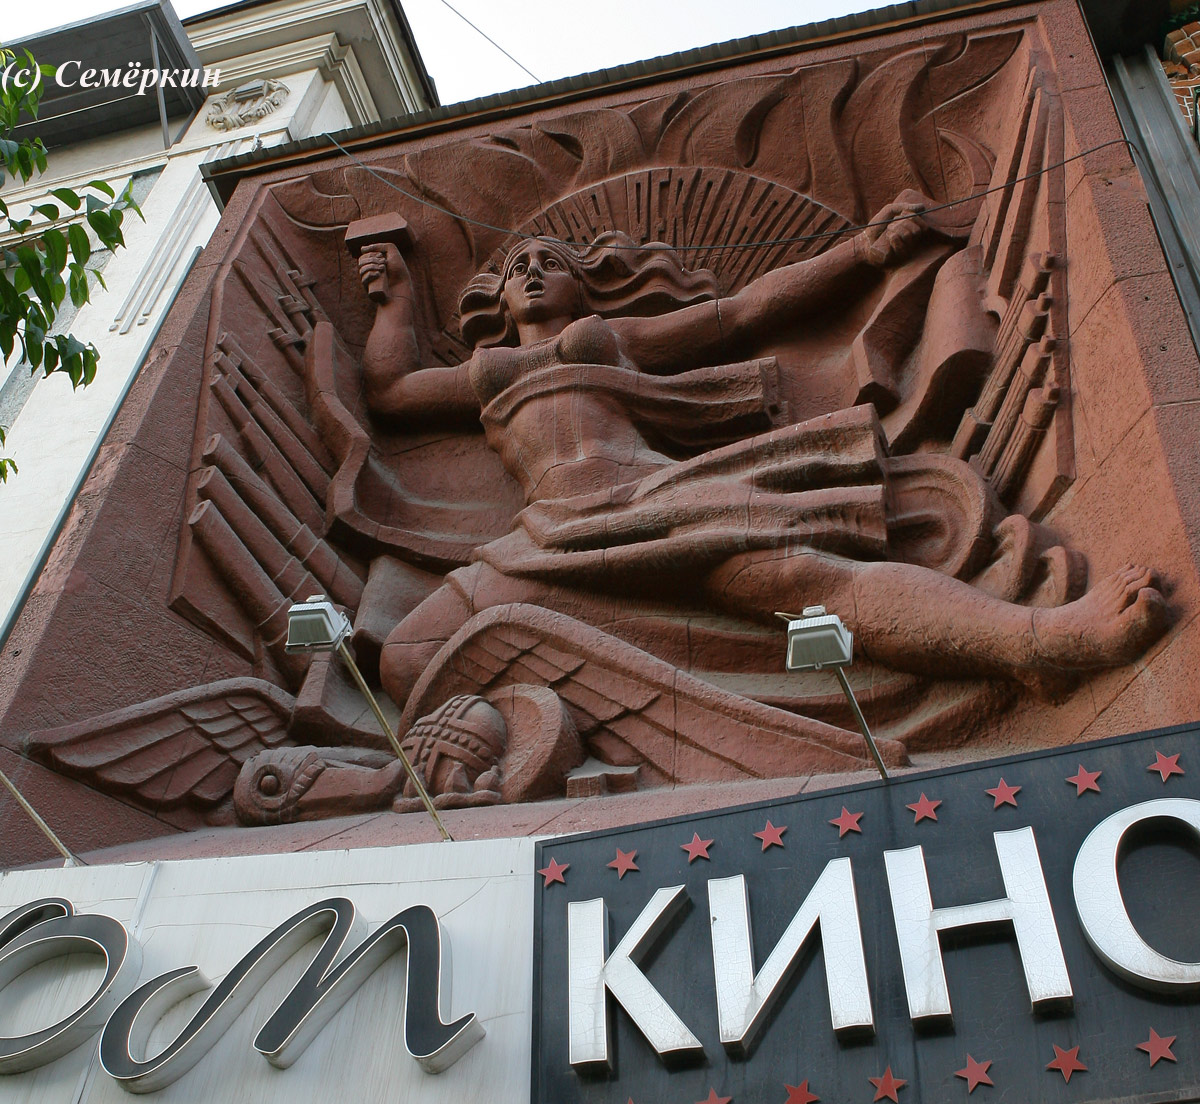 Красноярск - Дом кино - На фасаде суровая женщина с обнаженной грудью